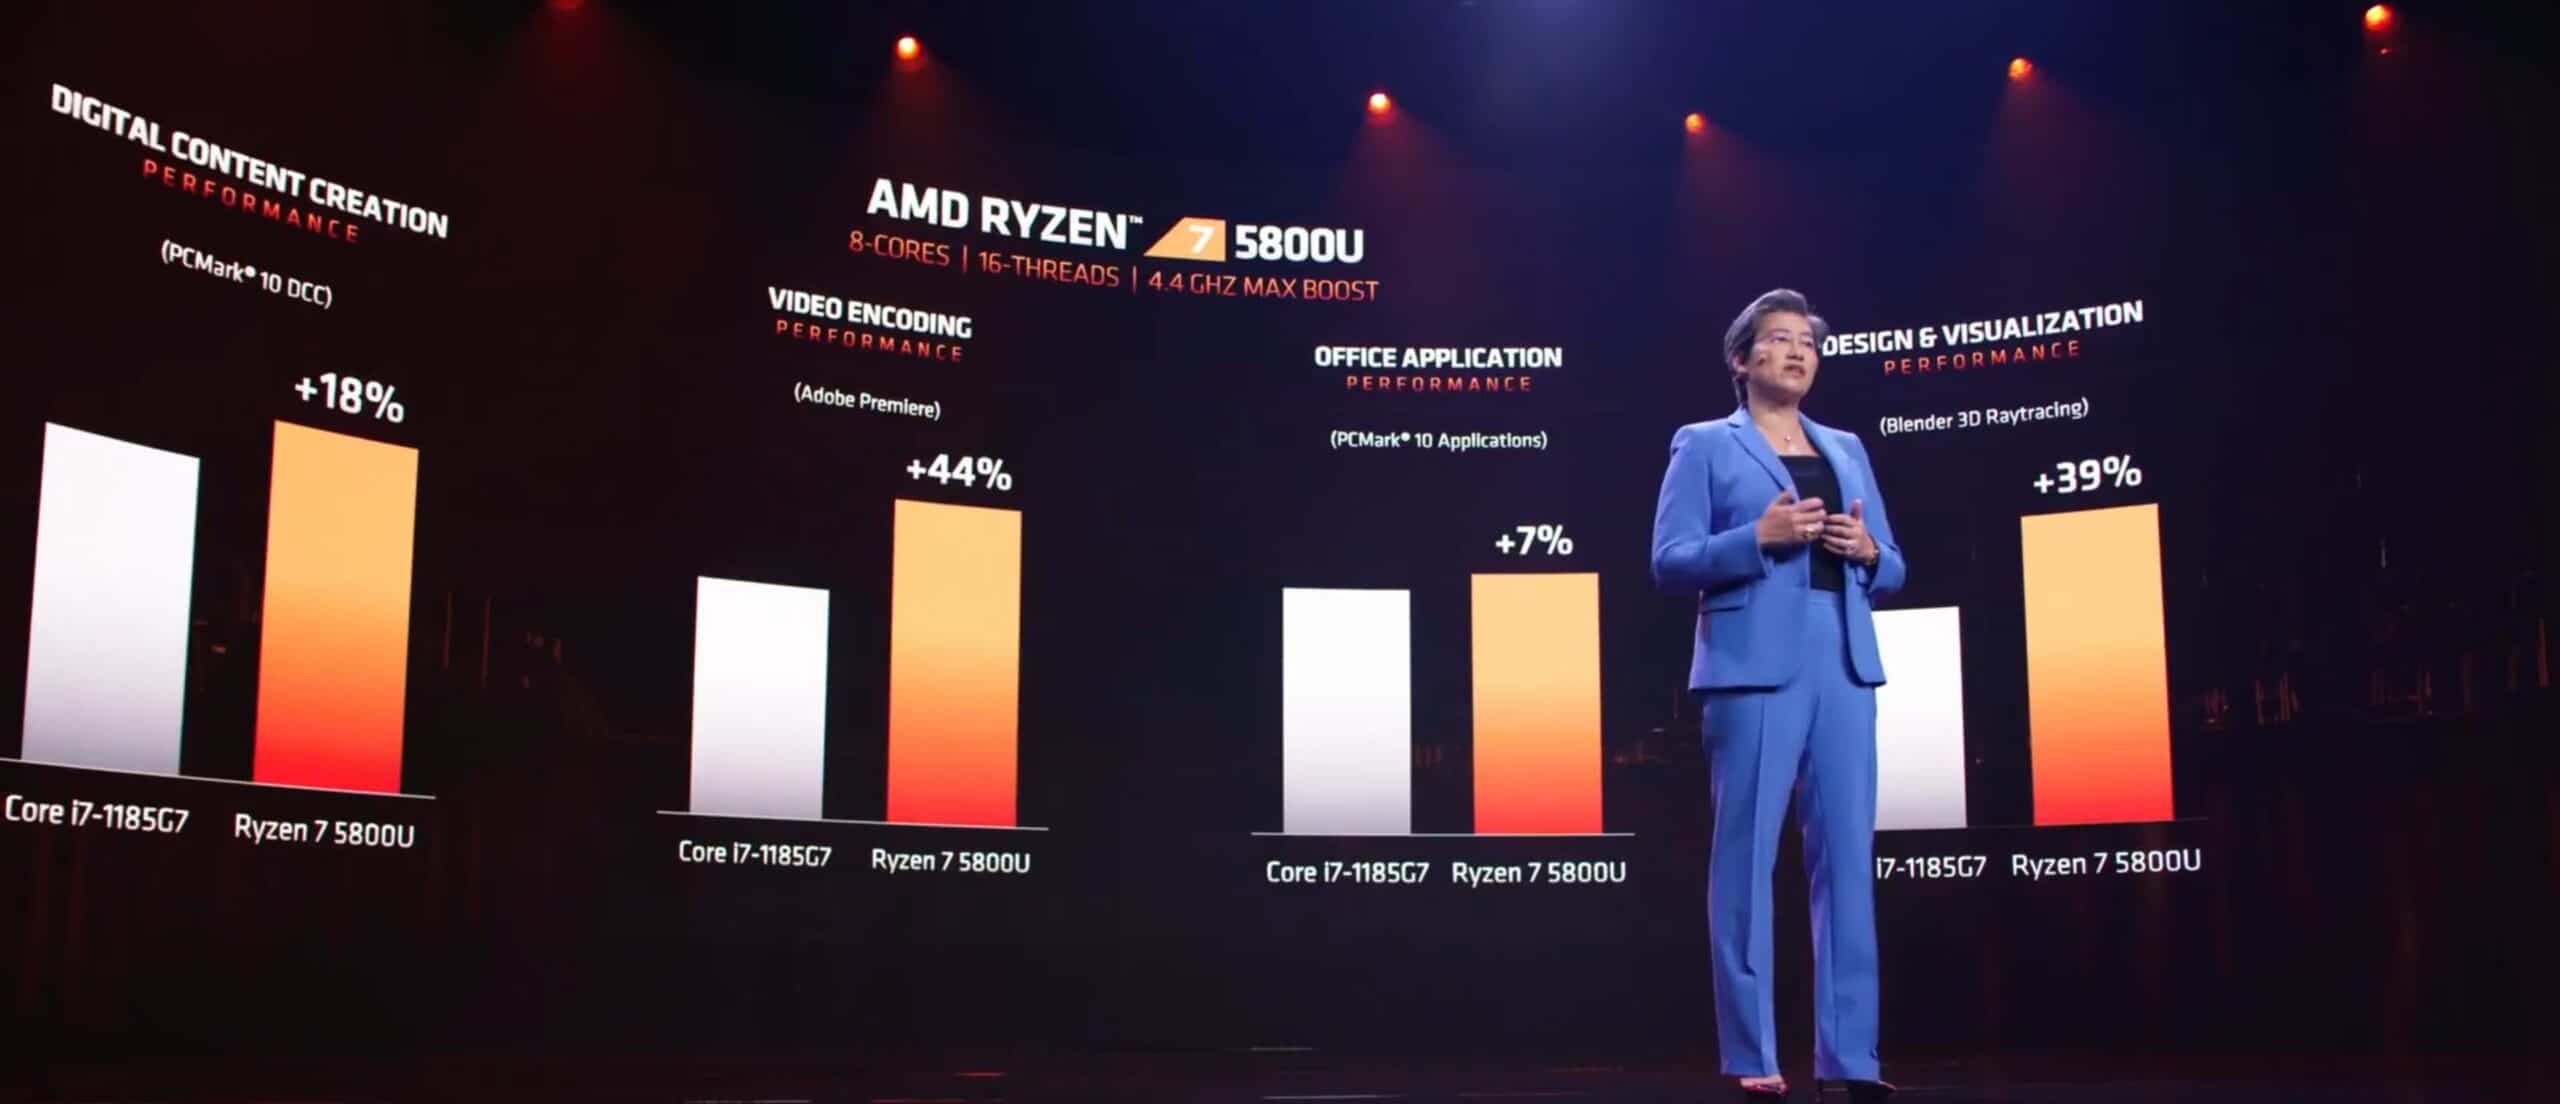 CES 2021: AMD Ryzen 5000 Mobile CPUs